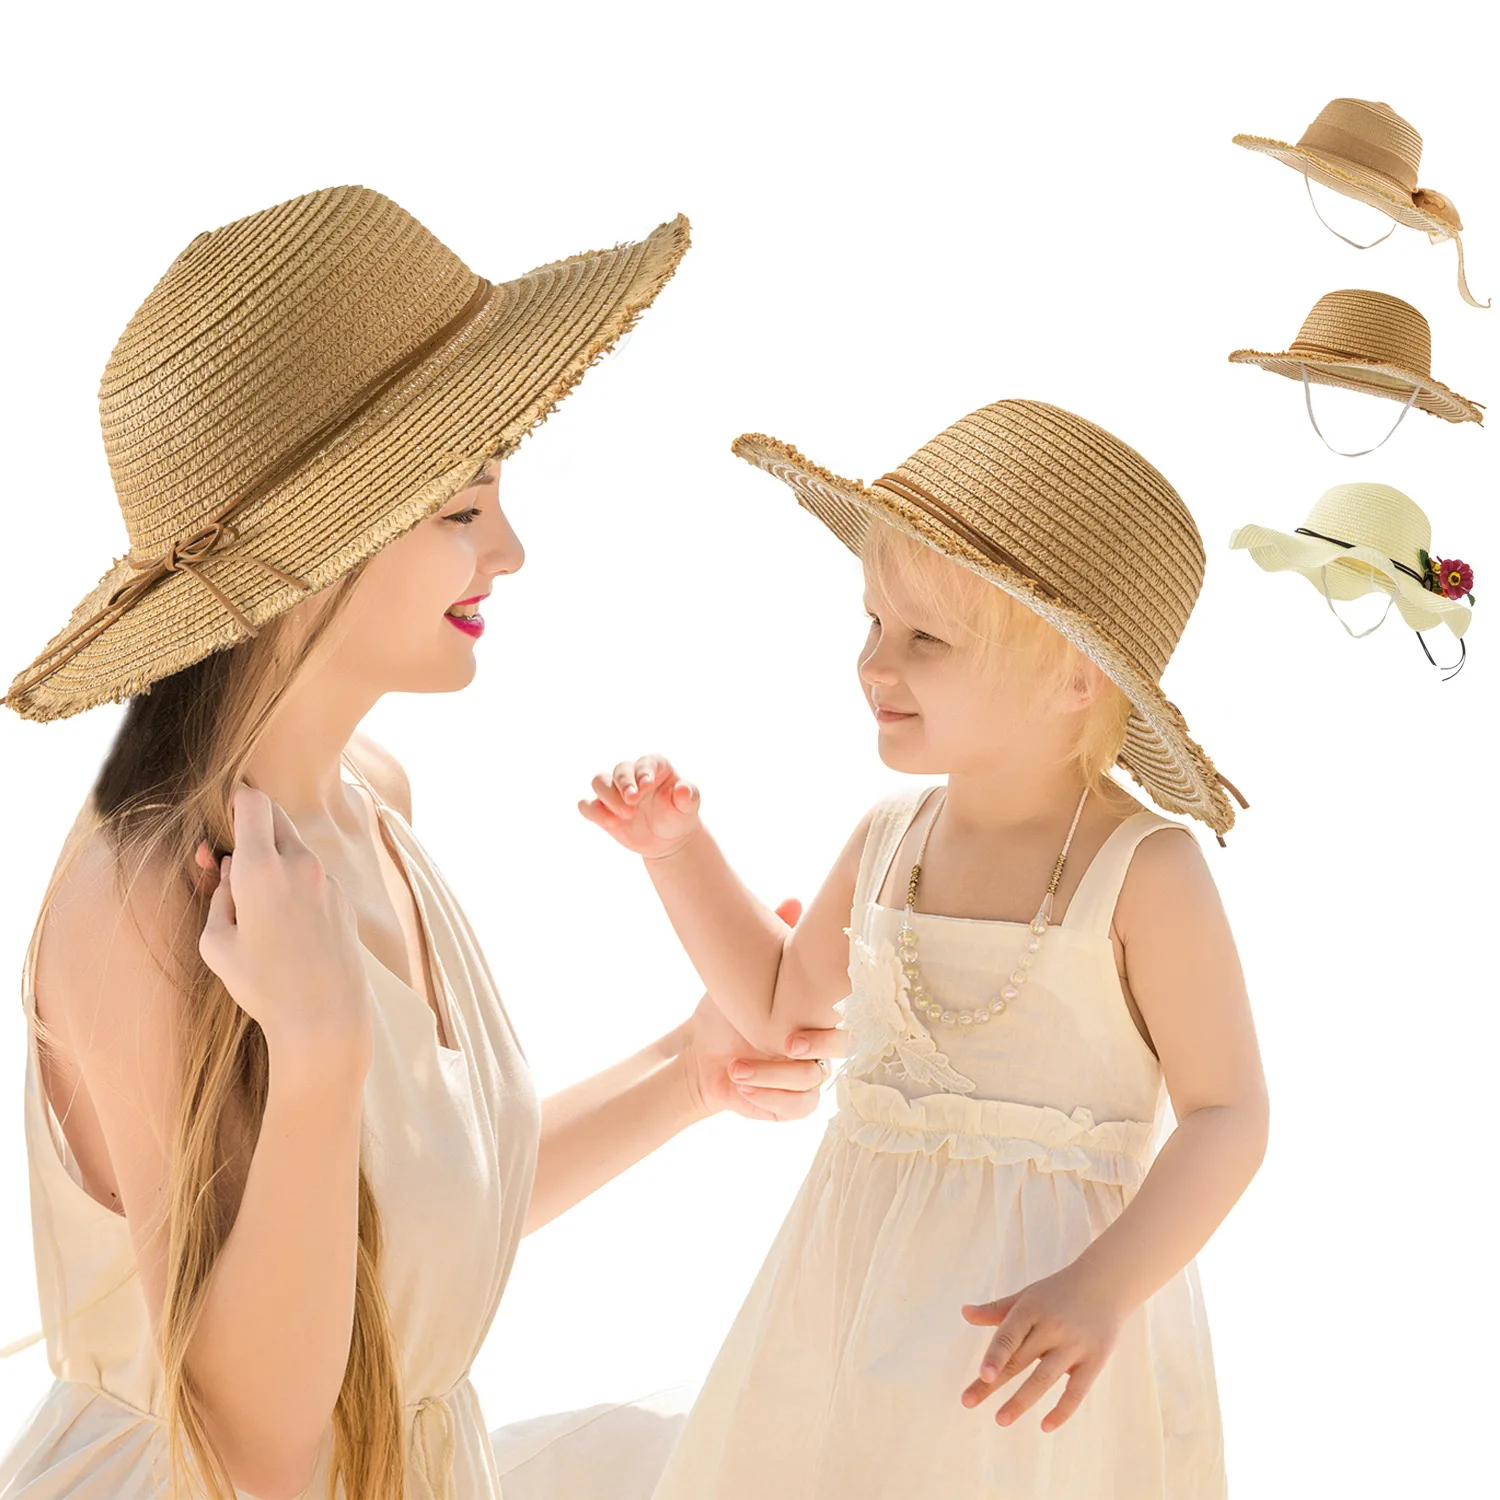 

Women Children Caps Wide-brimmed Panama Beach Sun Hat, Breathable Children's Hat, Beach Sunscreen Parent-child Straw Hat